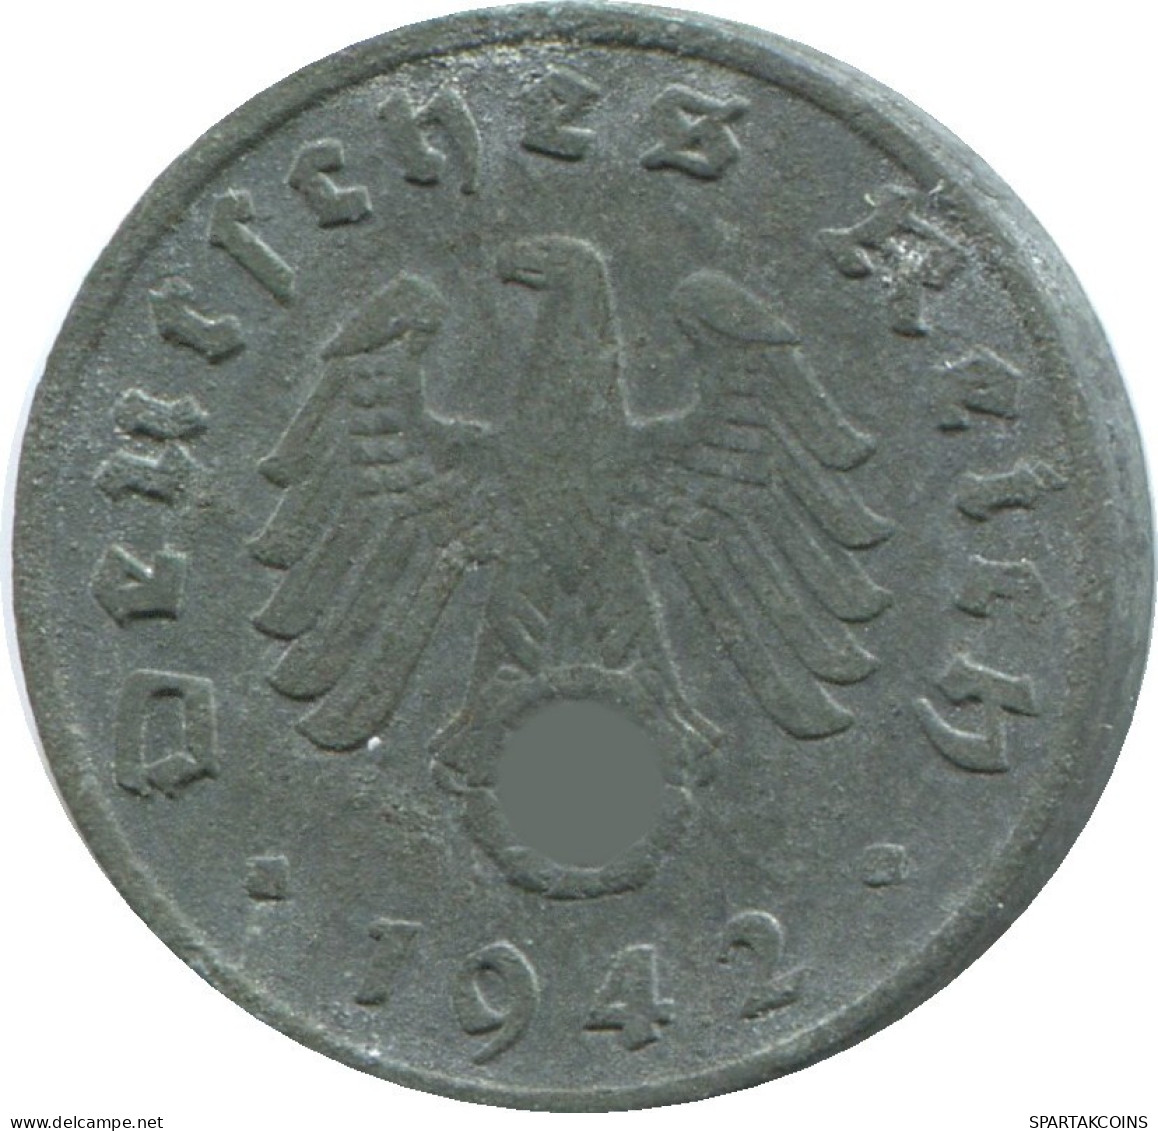 1 REICHSPFENNIG 1942 G GERMANY Coin #DE10425.5.U.A - 1 Reichspfennig